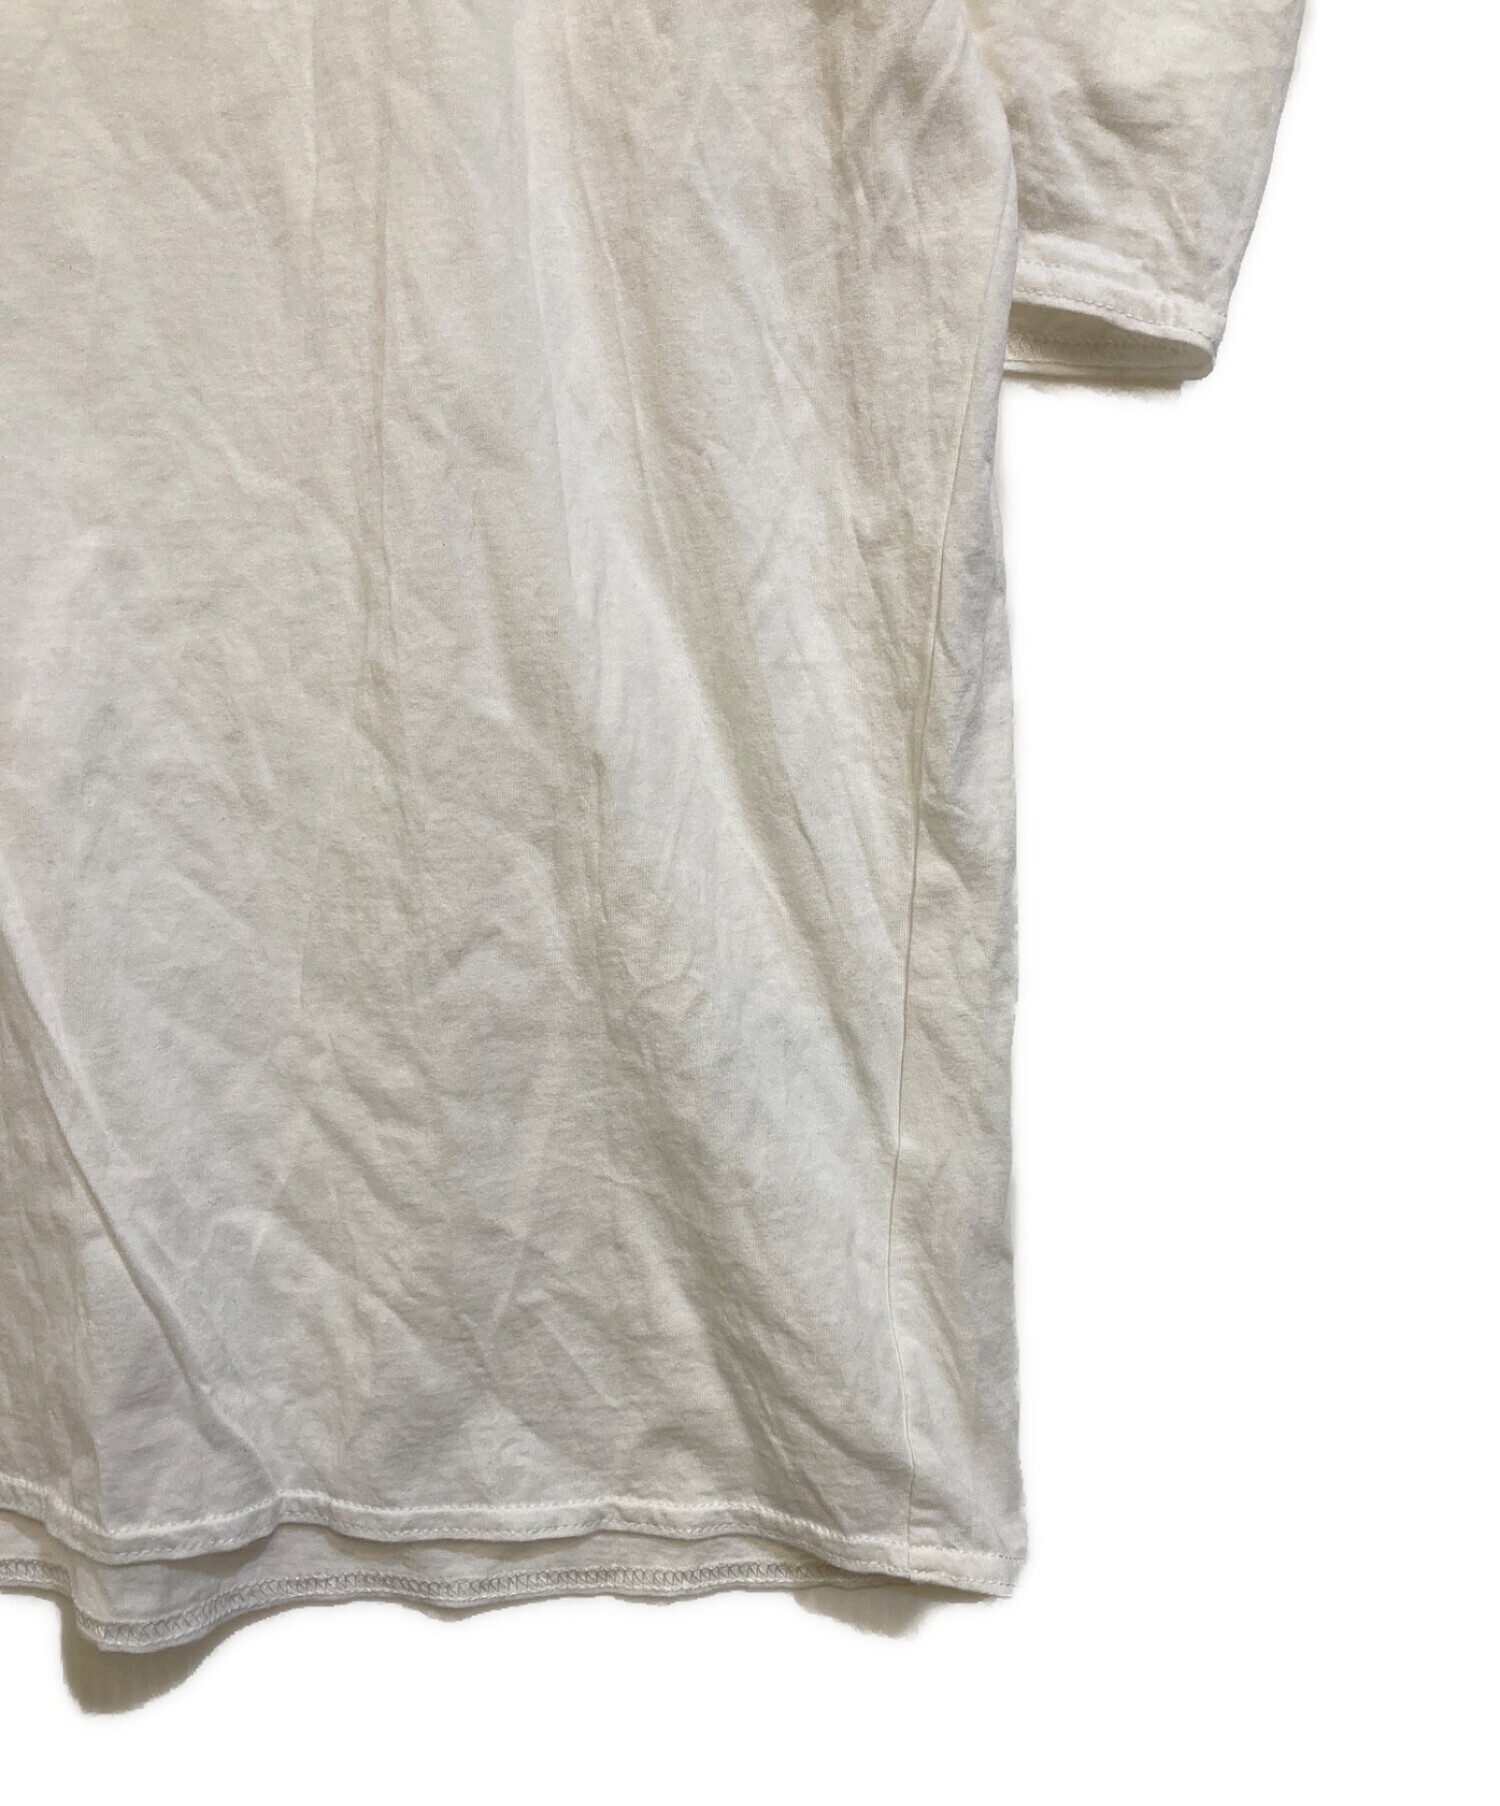 CELERI (セルリ) PUFF Tシャツ ホワイト サイズ:FREE